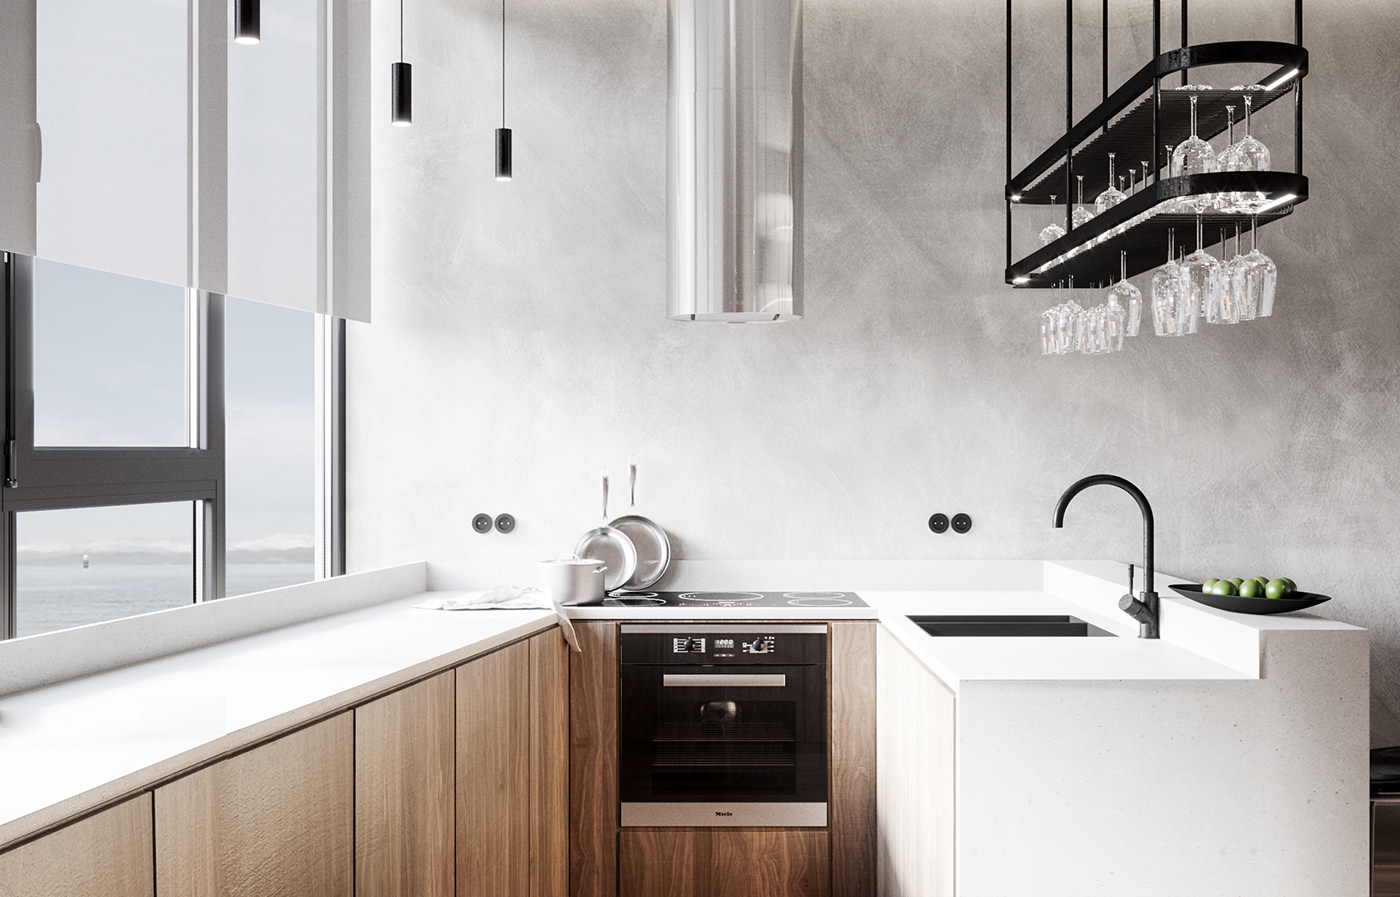 Modern Design kitchen minimalism binar design Interior architecture